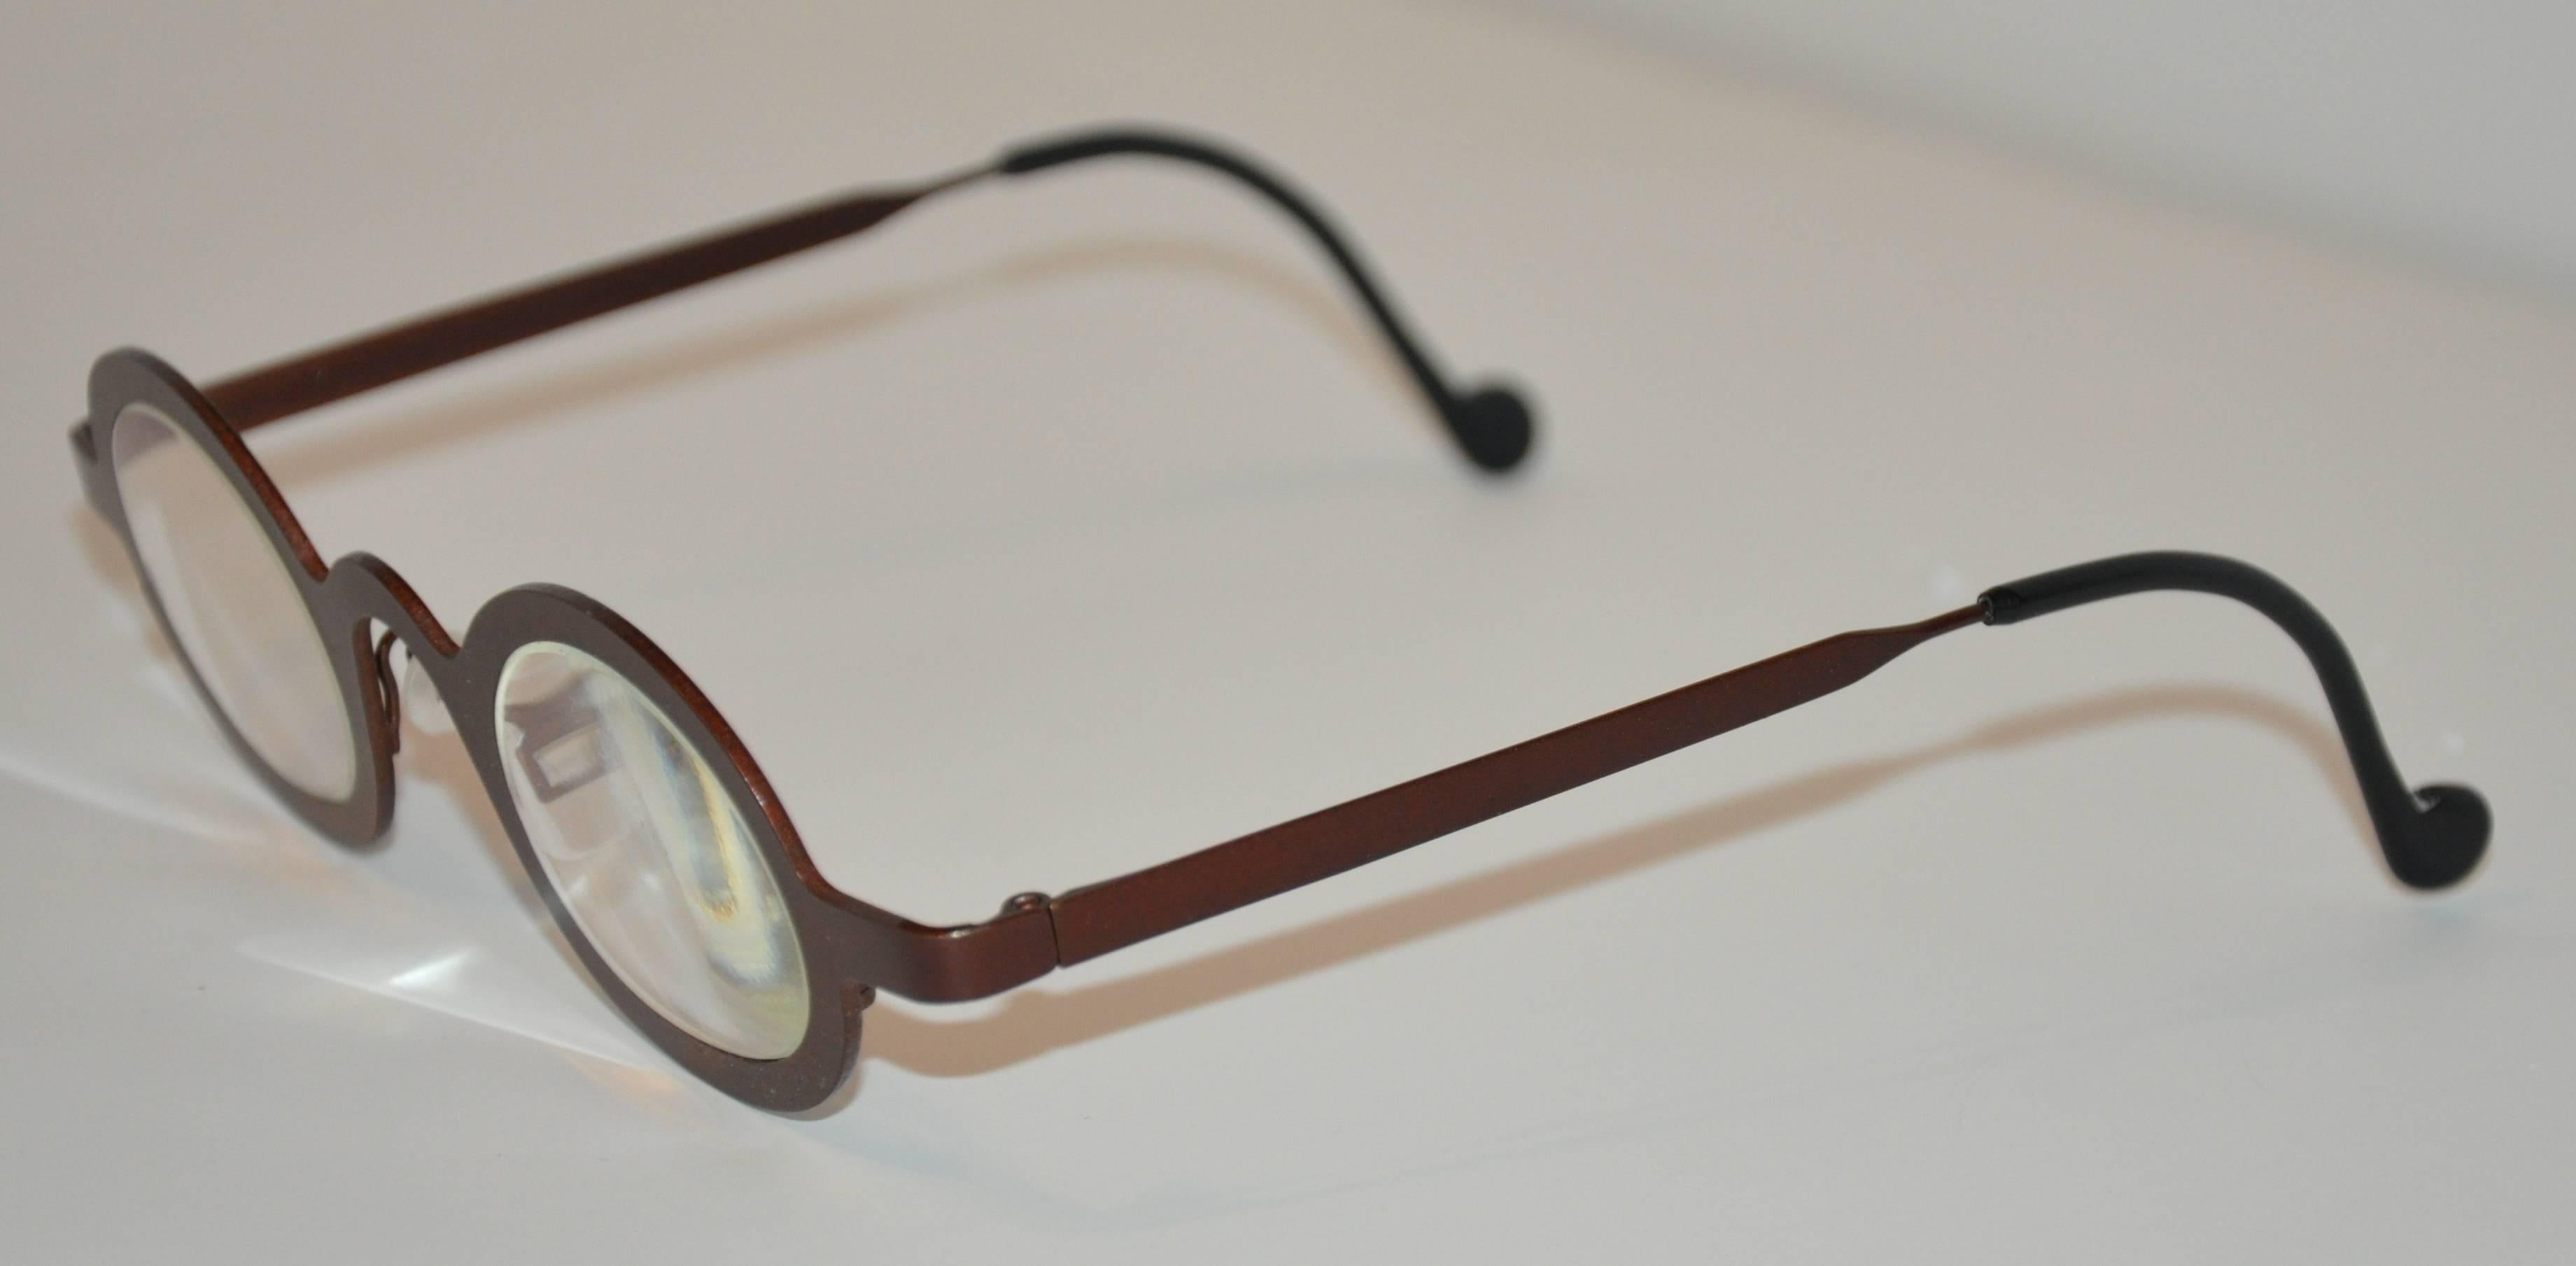        Les lunettes de vue 